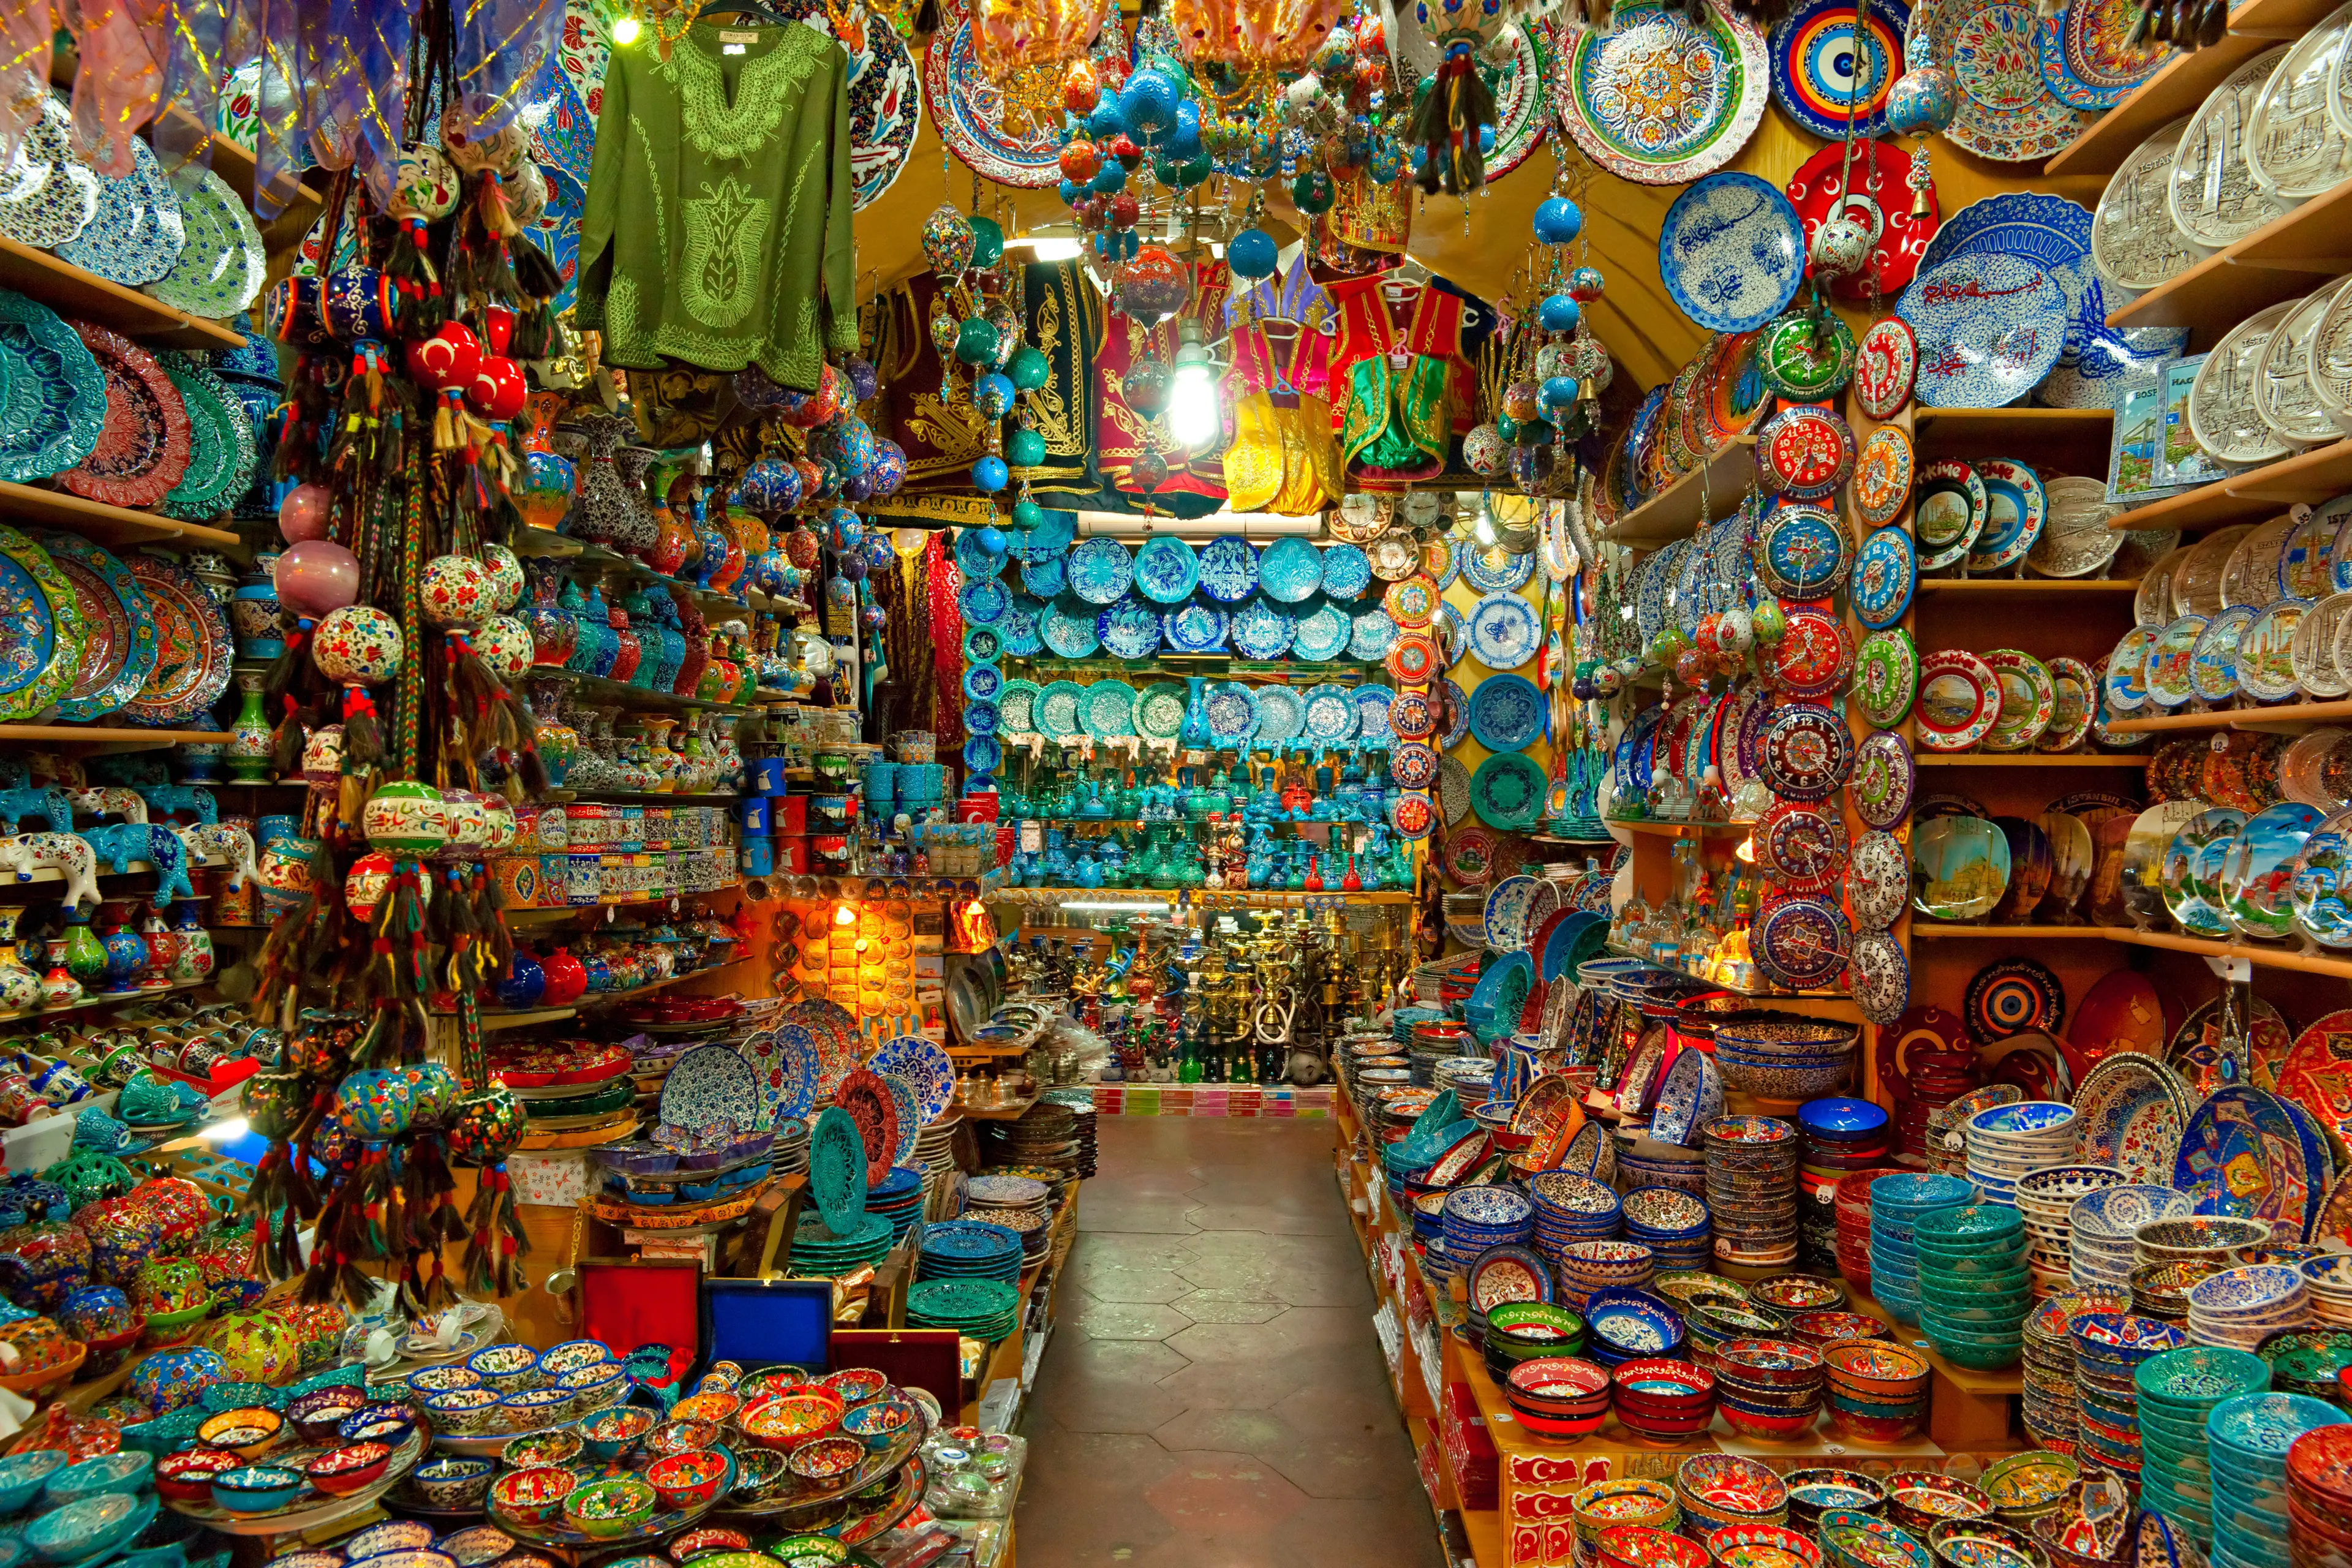 Grand Bazaar shops